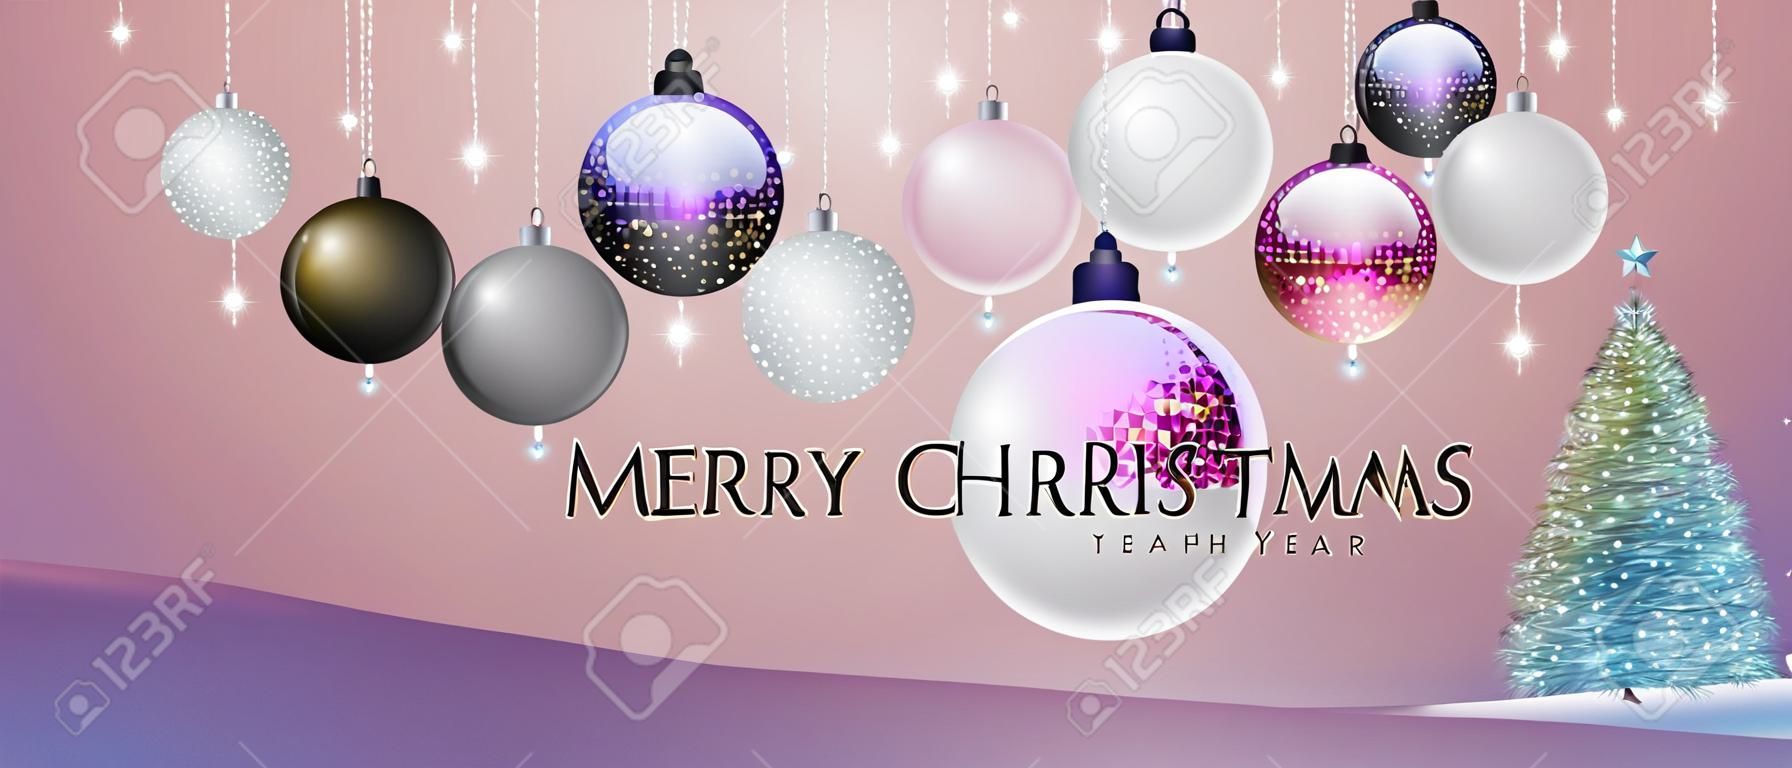 Cartel de feliz Navidad y feliz año nuevo con adornos navideños. Fondo de vacaciones de Navidad. ilustración vectorial